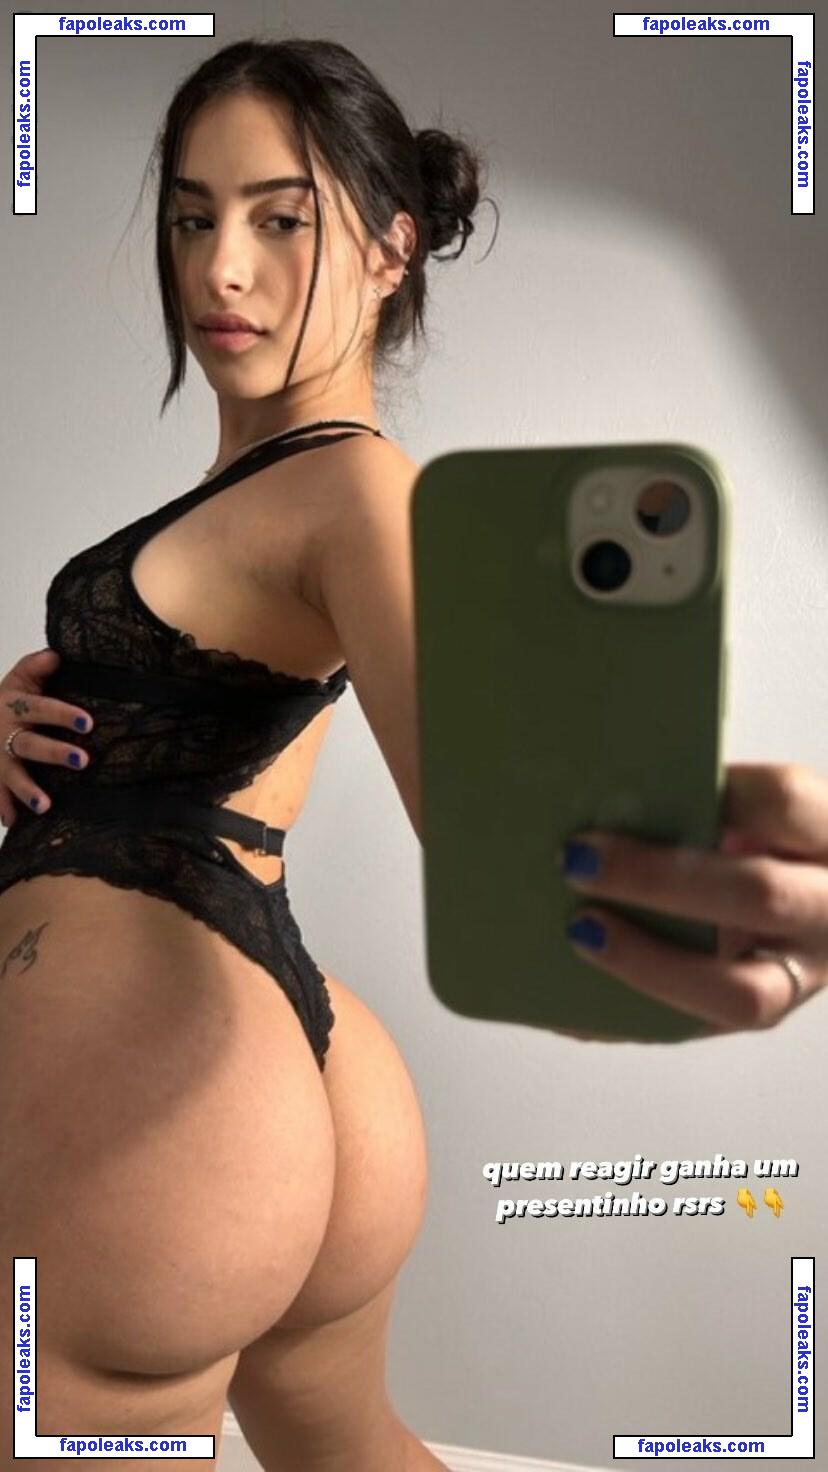 Giovanna Silva / giovannamuzzisilva / tsgisilvs nude photo #0004 from OnlyFans